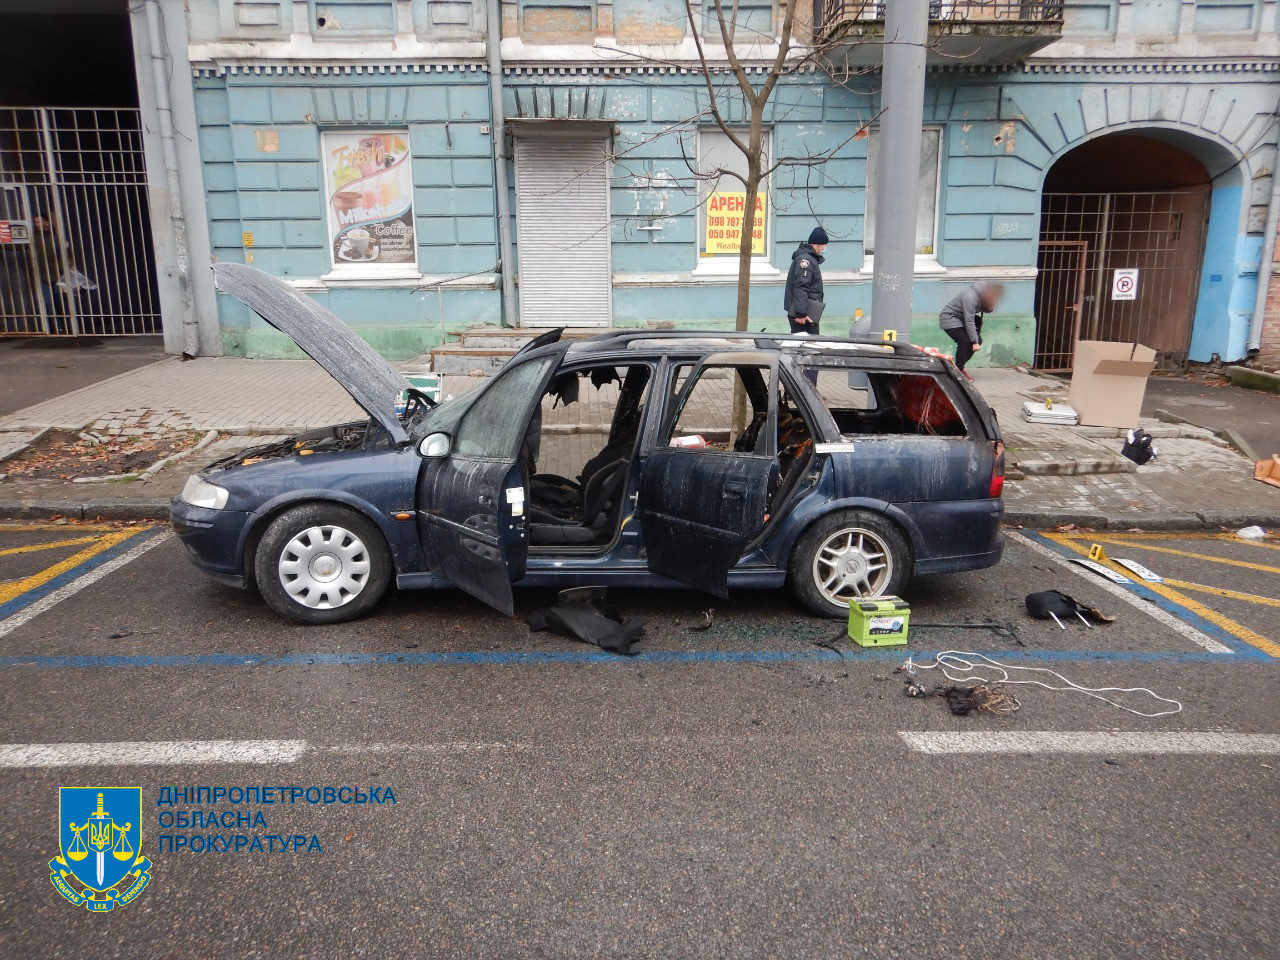 Взрыв авто в центре Днепра замаскировал дистанционное покушение на депутата облсовета, фото - Нацполиция